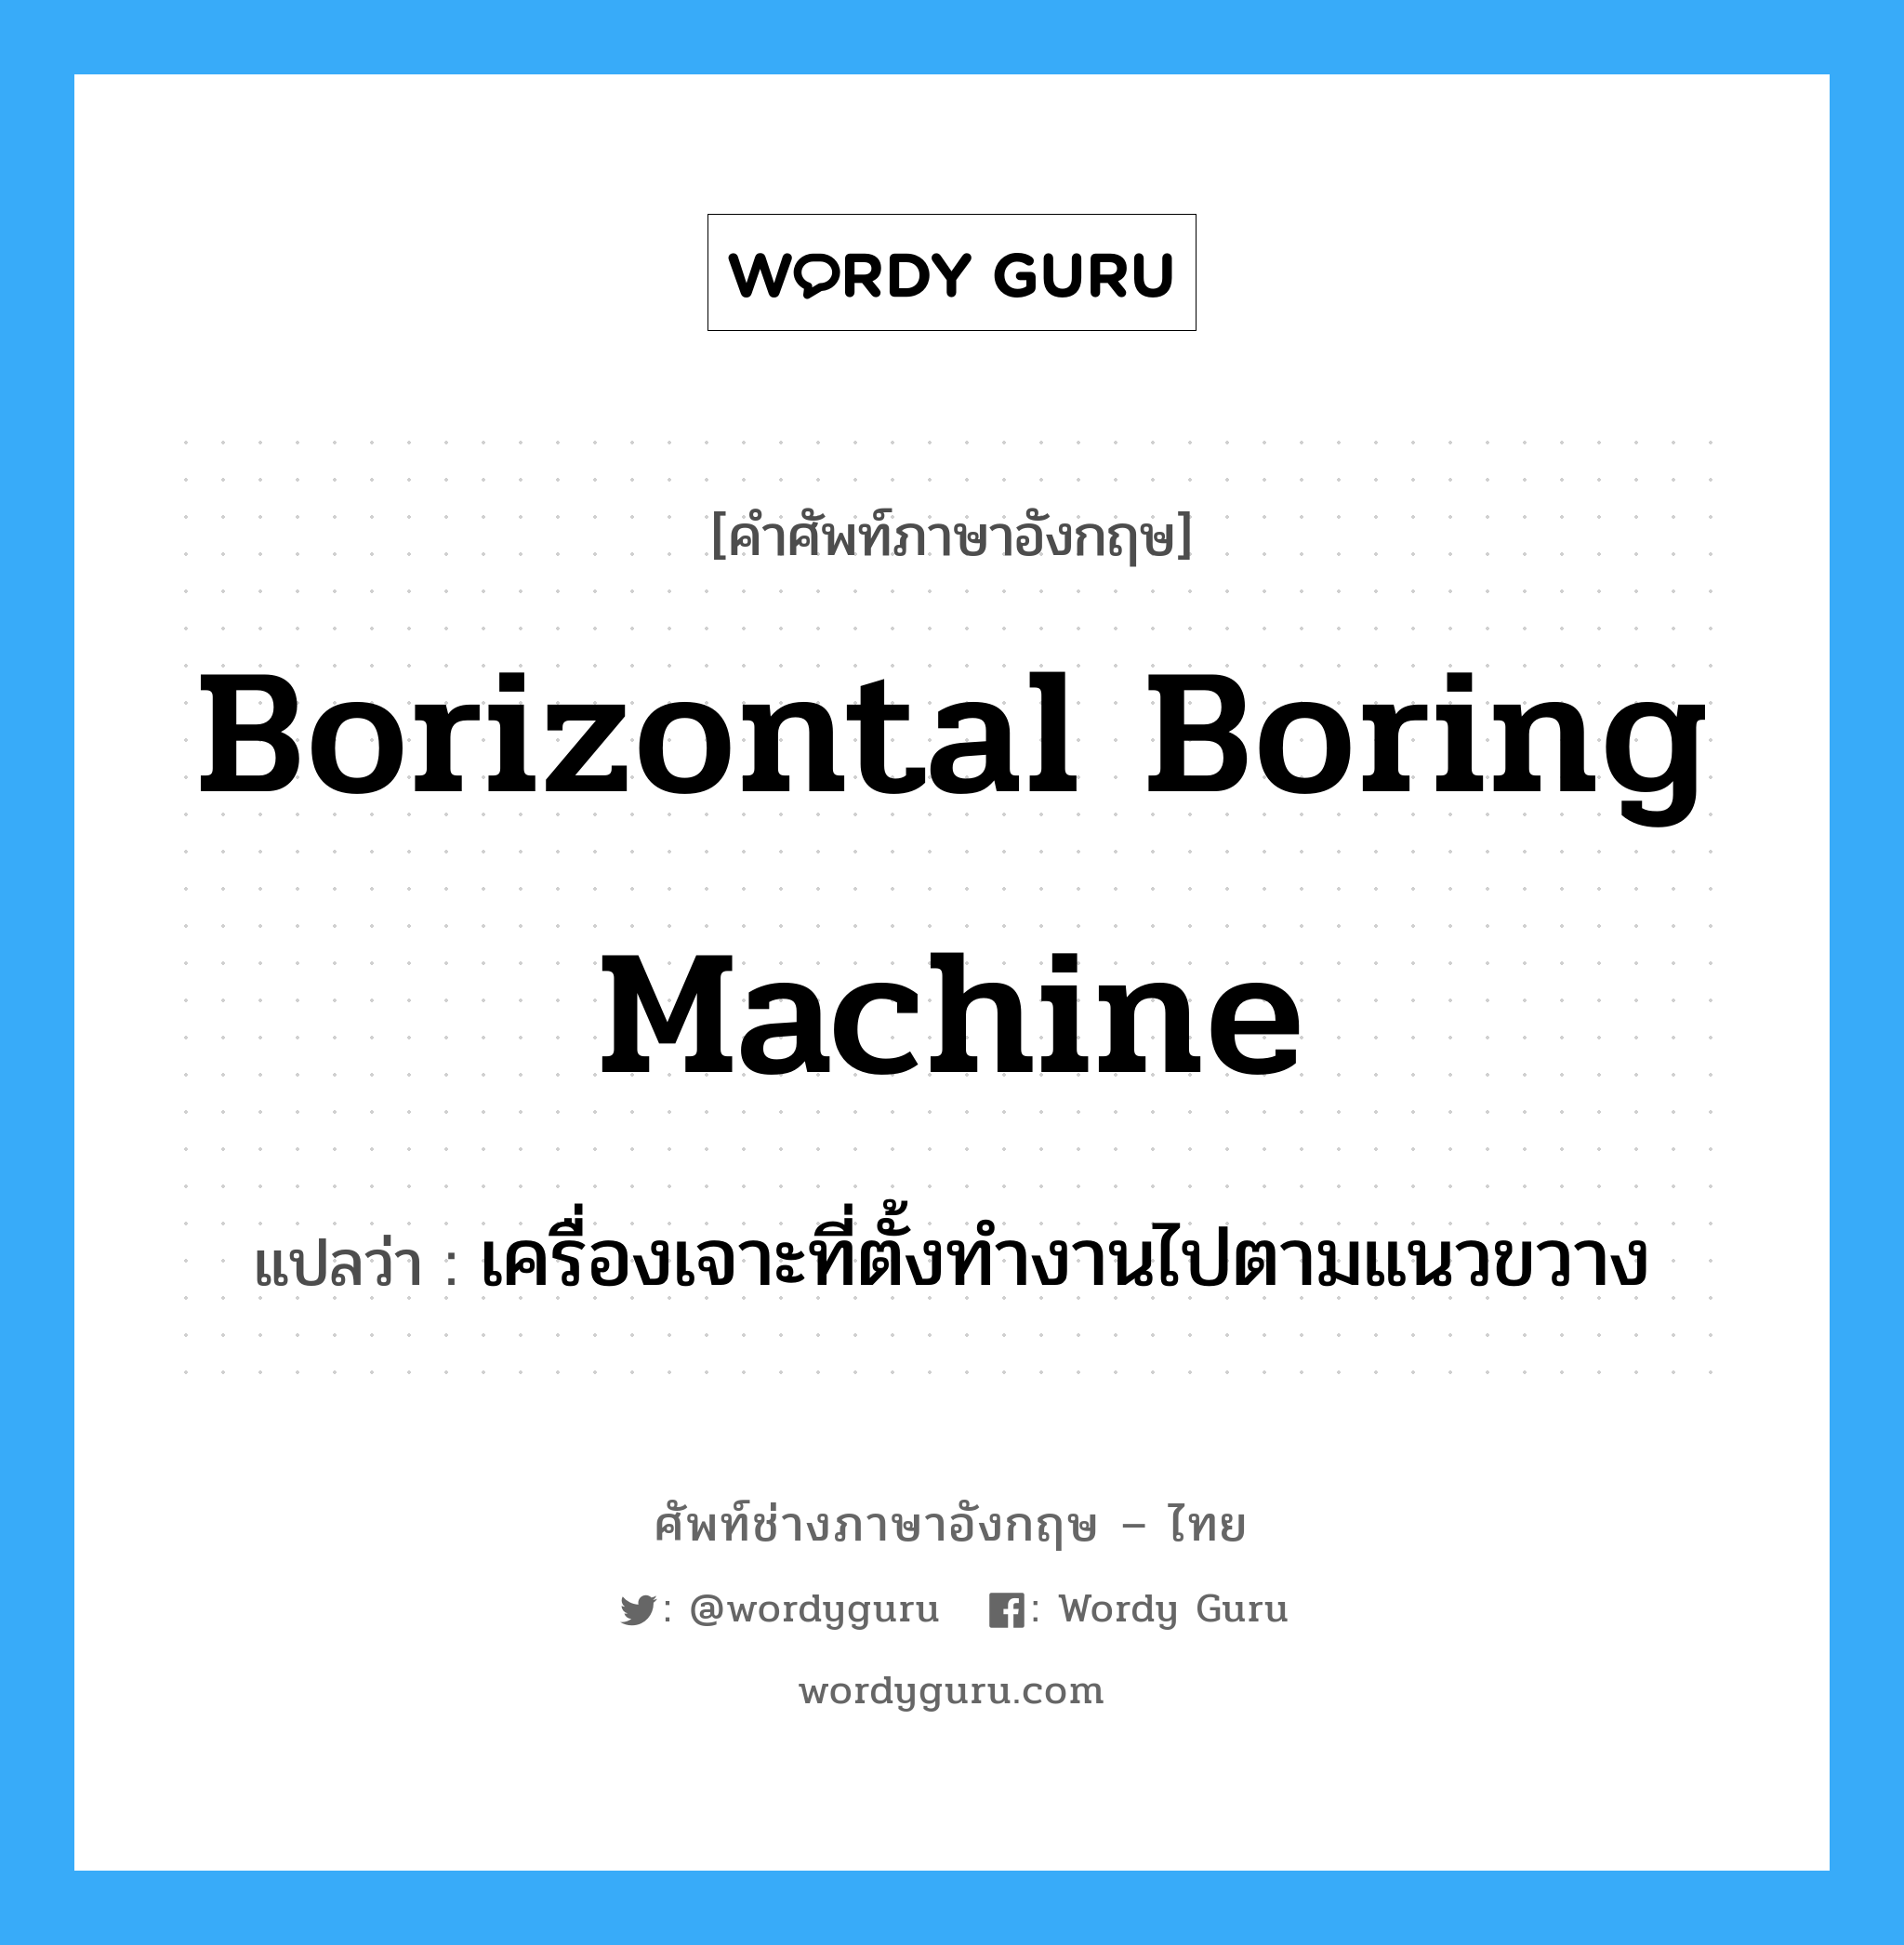 เครื่องเจาะที่ตั้งทำงานไปตามแนวขวาง ภาษาอังกฤษ?, คำศัพท์ช่างภาษาอังกฤษ - ไทย เครื่องเจาะที่ตั้งทำงานไปตามแนวขวาง คำศัพท์ภาษาอังกฤษ เครื่องเจาะที่ตั้งทำงานไปตามแนวขวาง แปลว่า borizontal boring machine